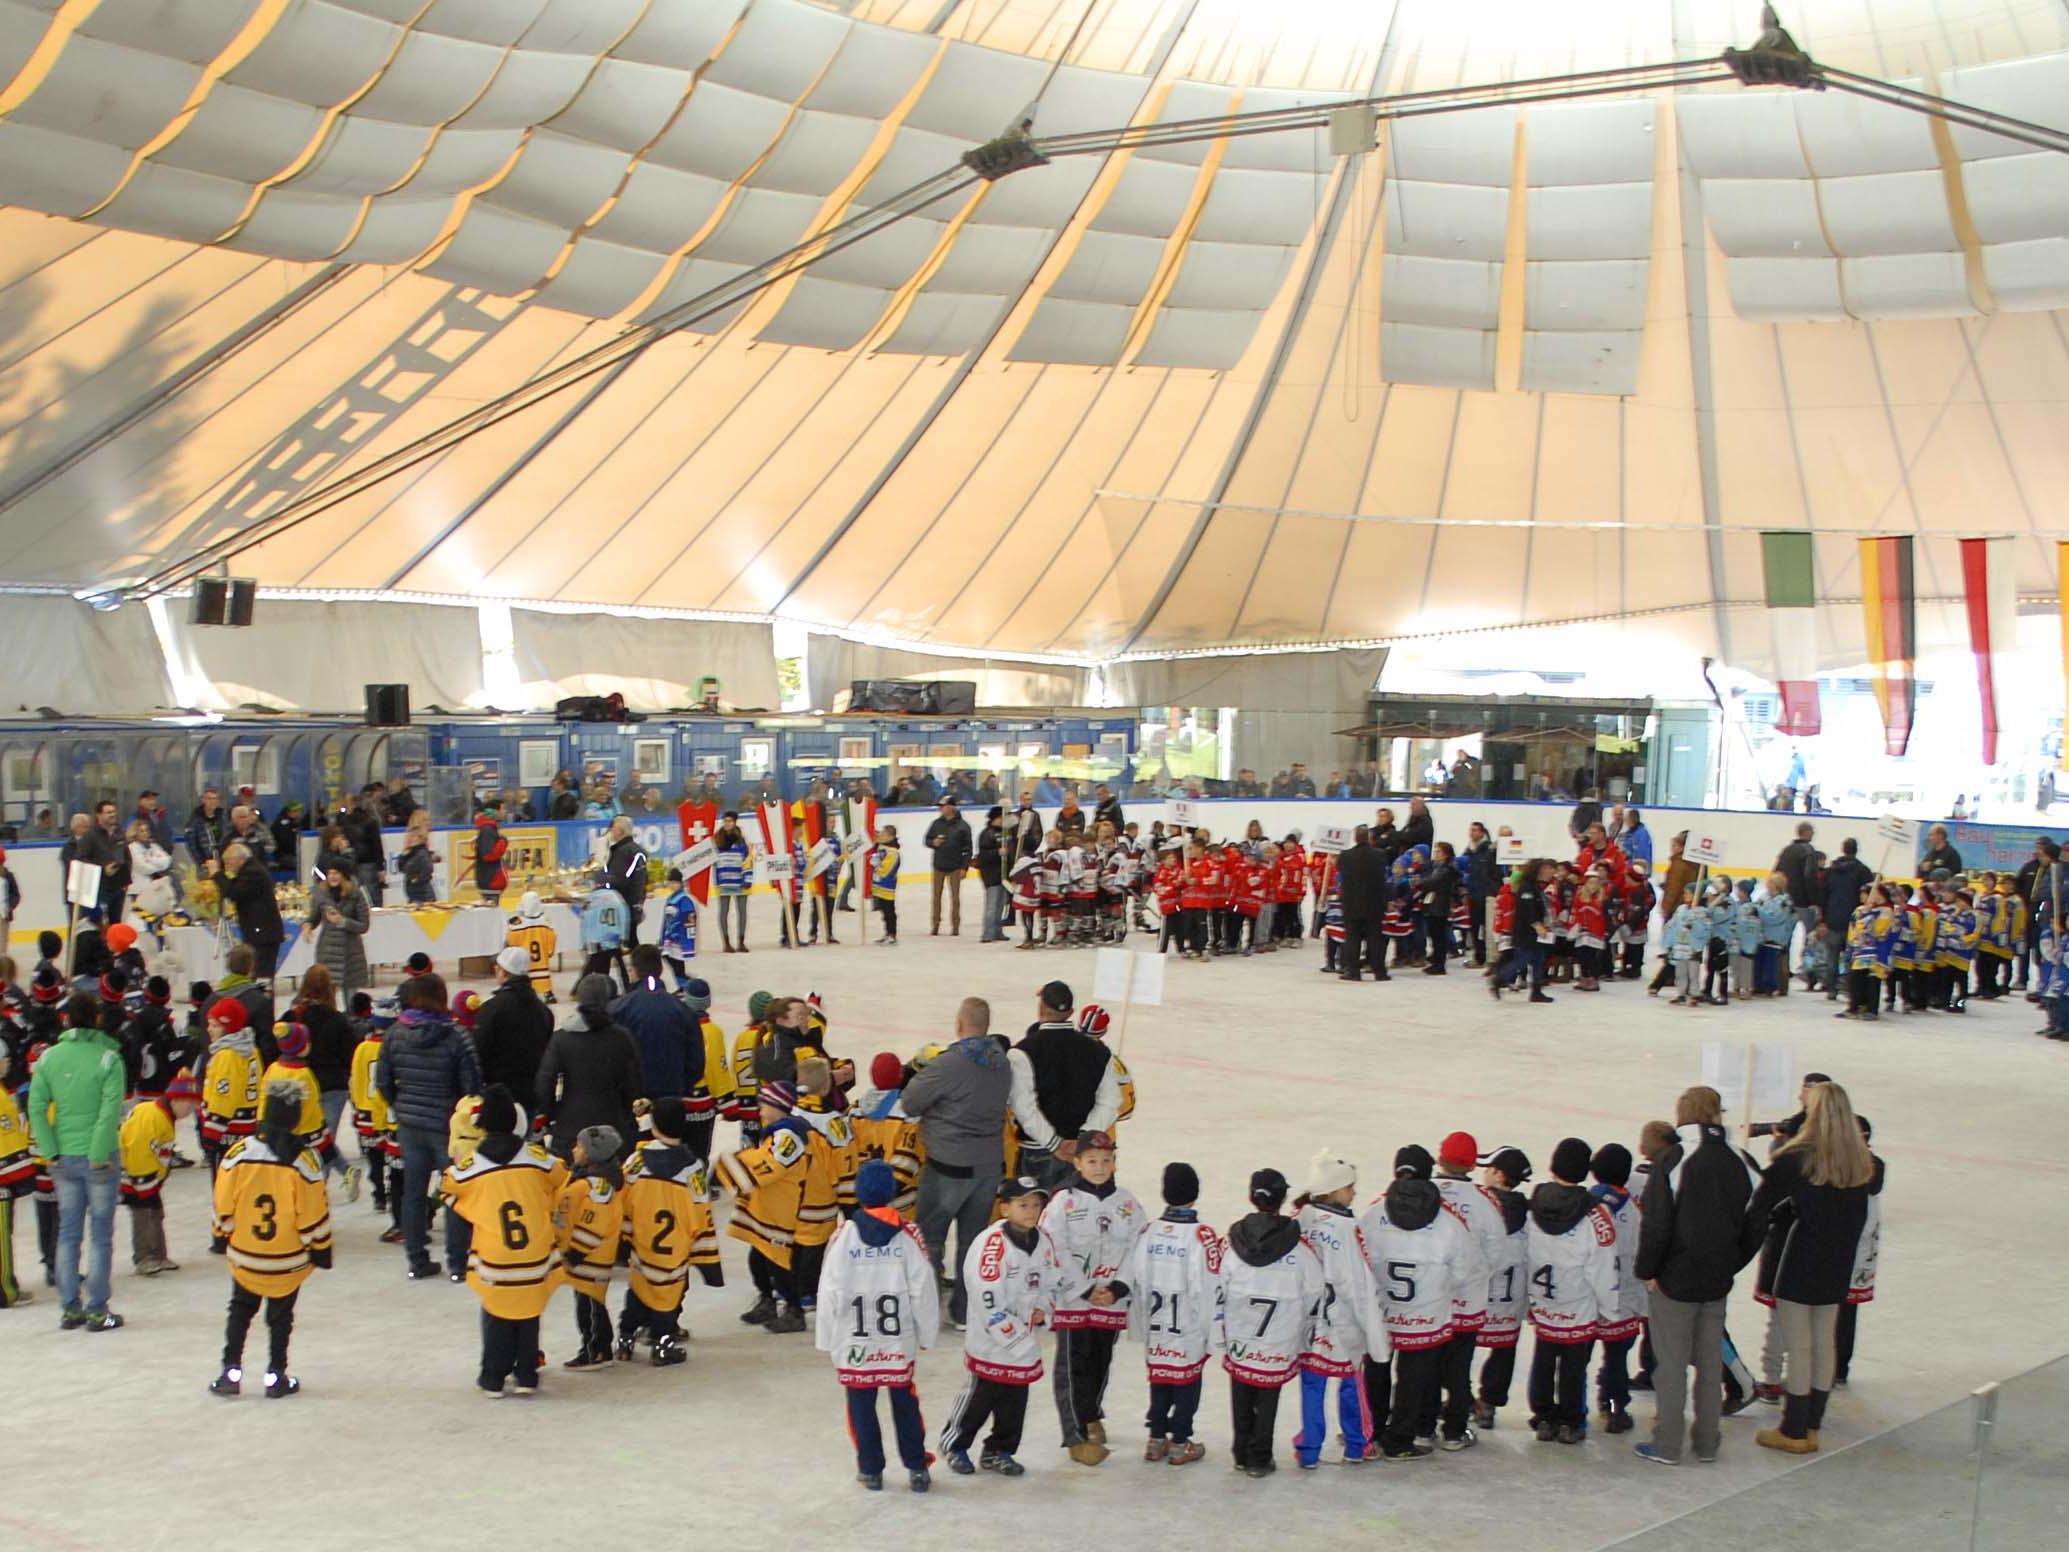 Die 1.800 Quadratmeter große Eisfläche im Aktivpark Montafon während einer Großveranstaltung